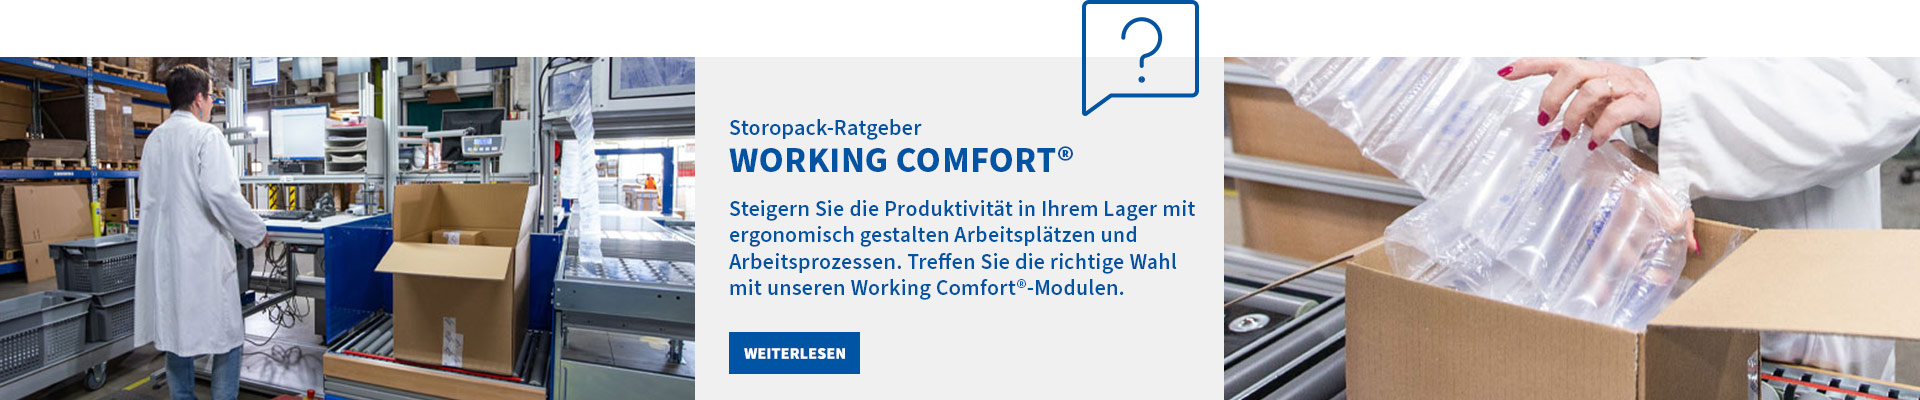 Storopack-Ratgeber: Working Comfort®